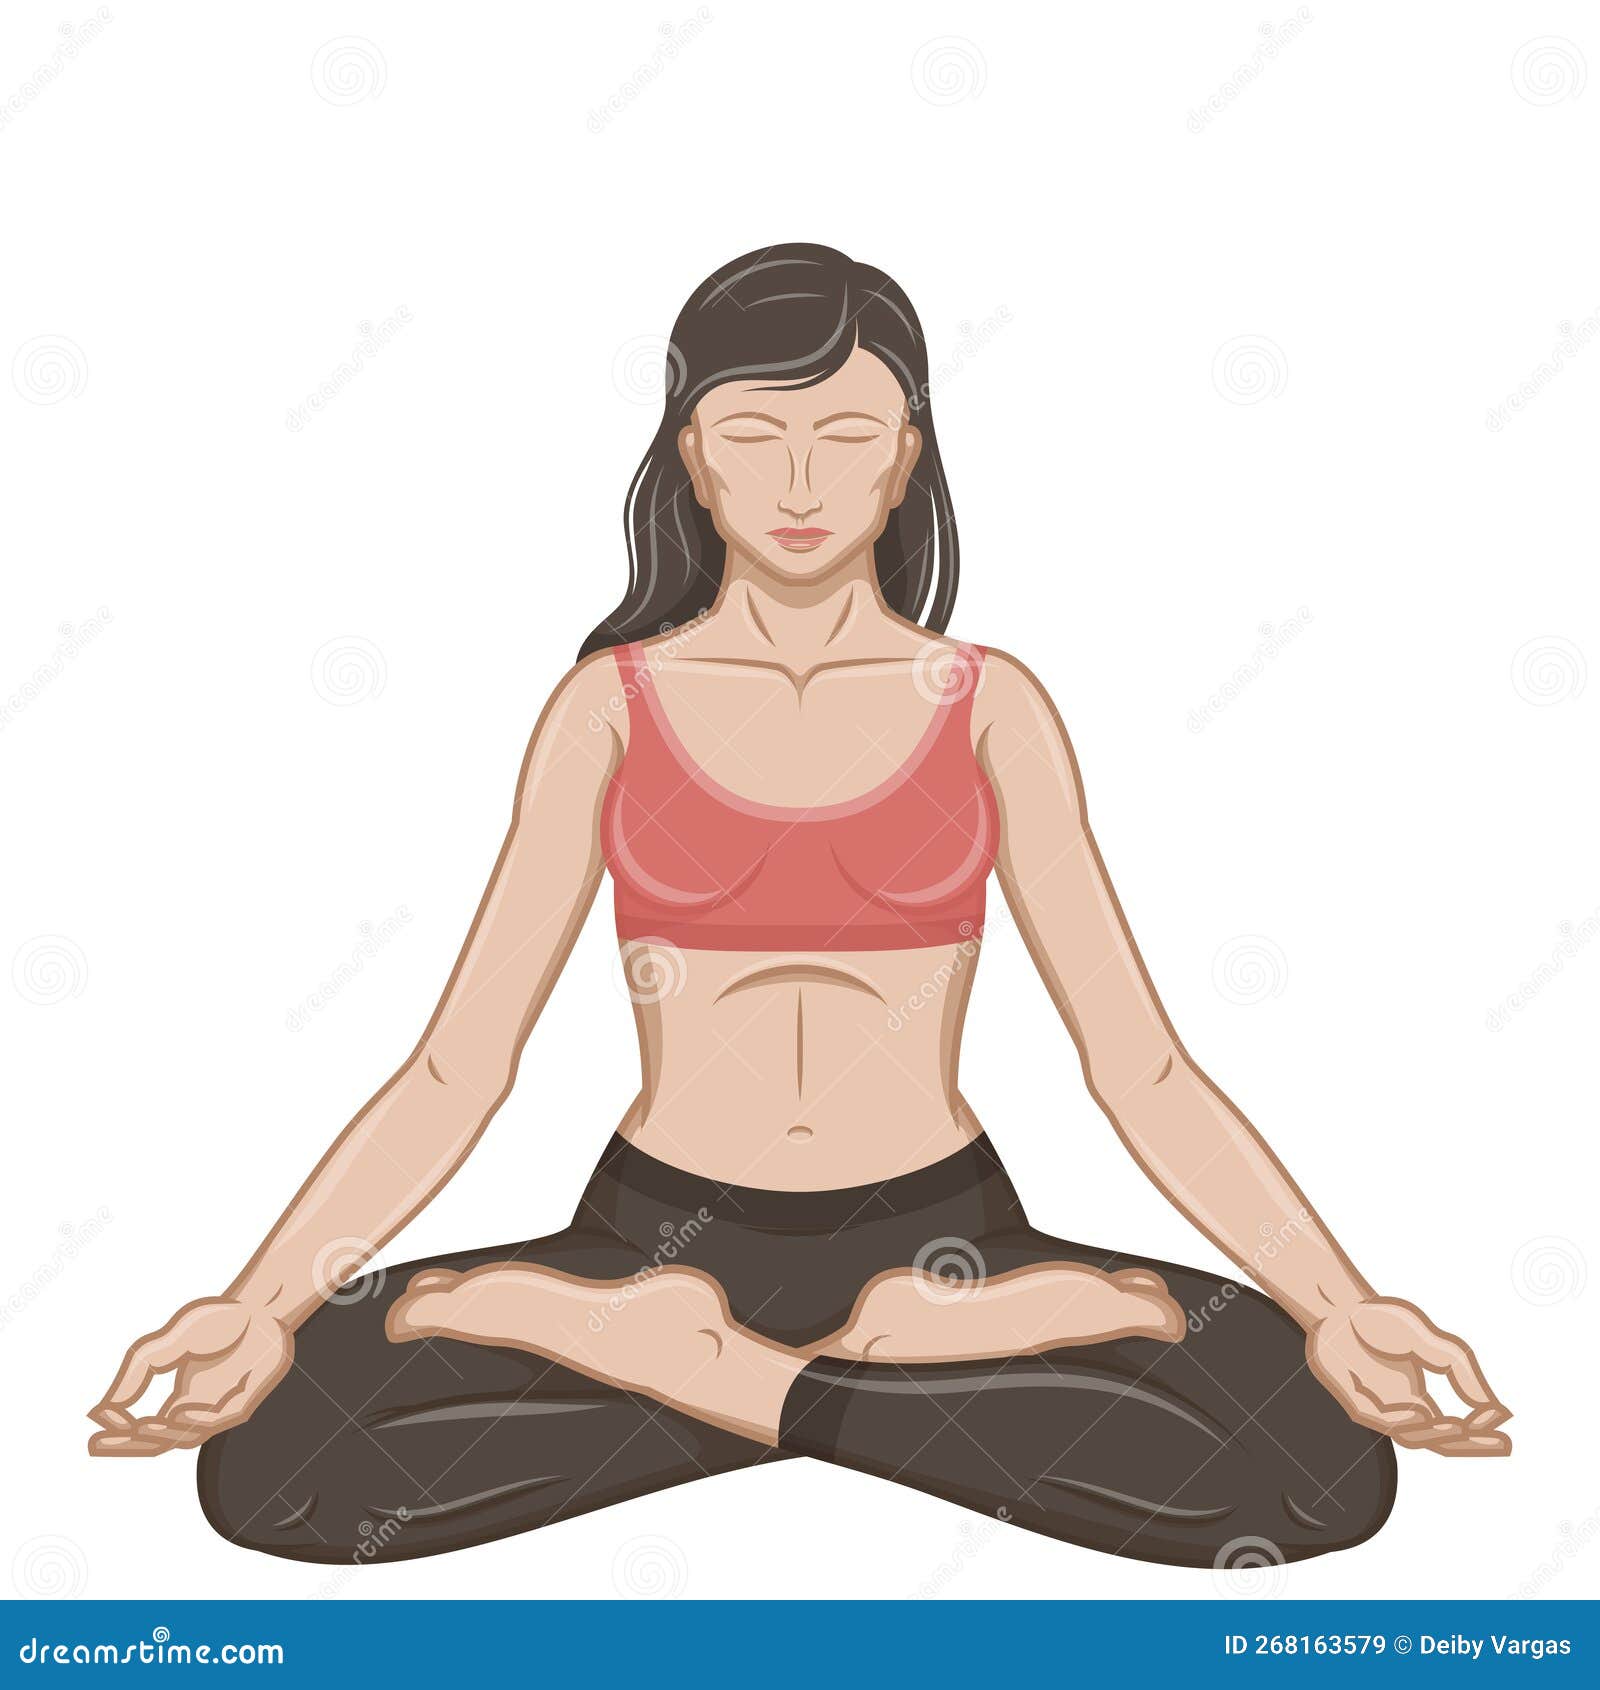 https://thumbs.dreamstime.com/z/desenho-vetorial-da-mulher-que-faz-yoga-de-meditando-na-posi%C3%A7%C3%A3o-flor-l%C3%B3tus-fazendo-yog-268163579.jpg